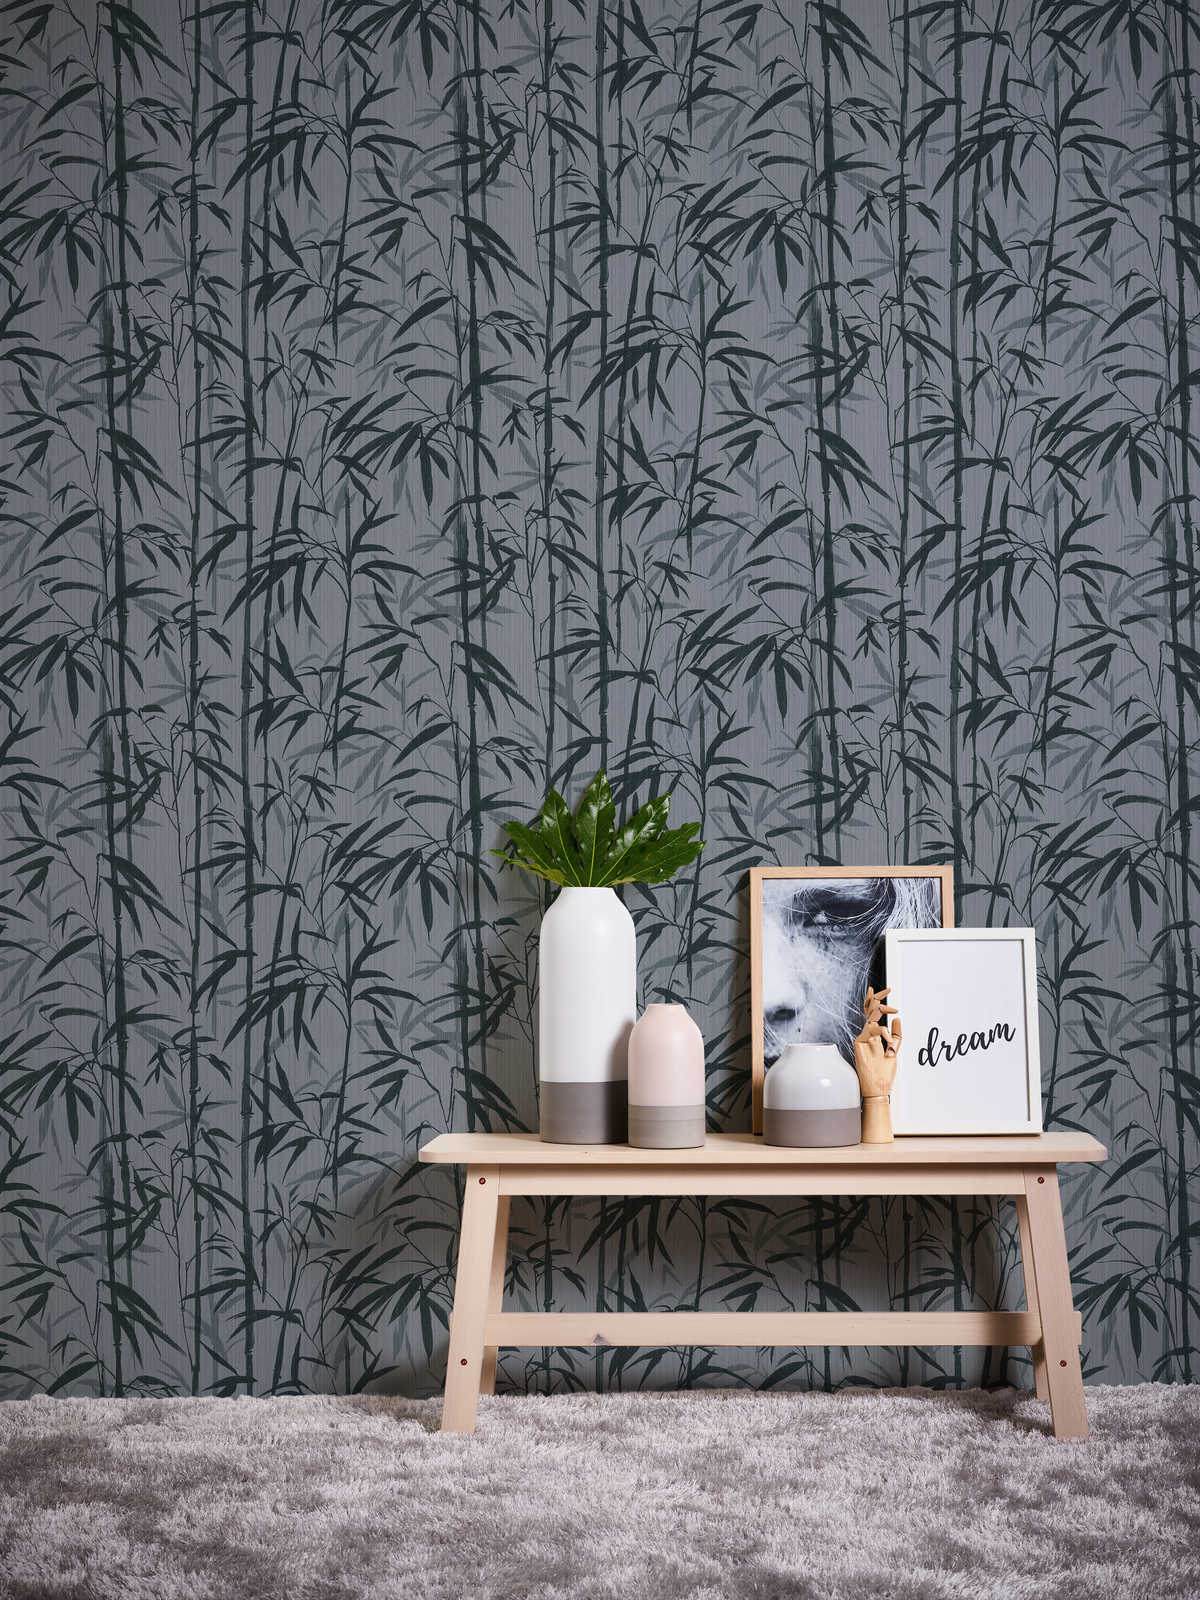             MICHALSKY Vliestapete natürliches Bambus Muster – Grau, Schwarz
        